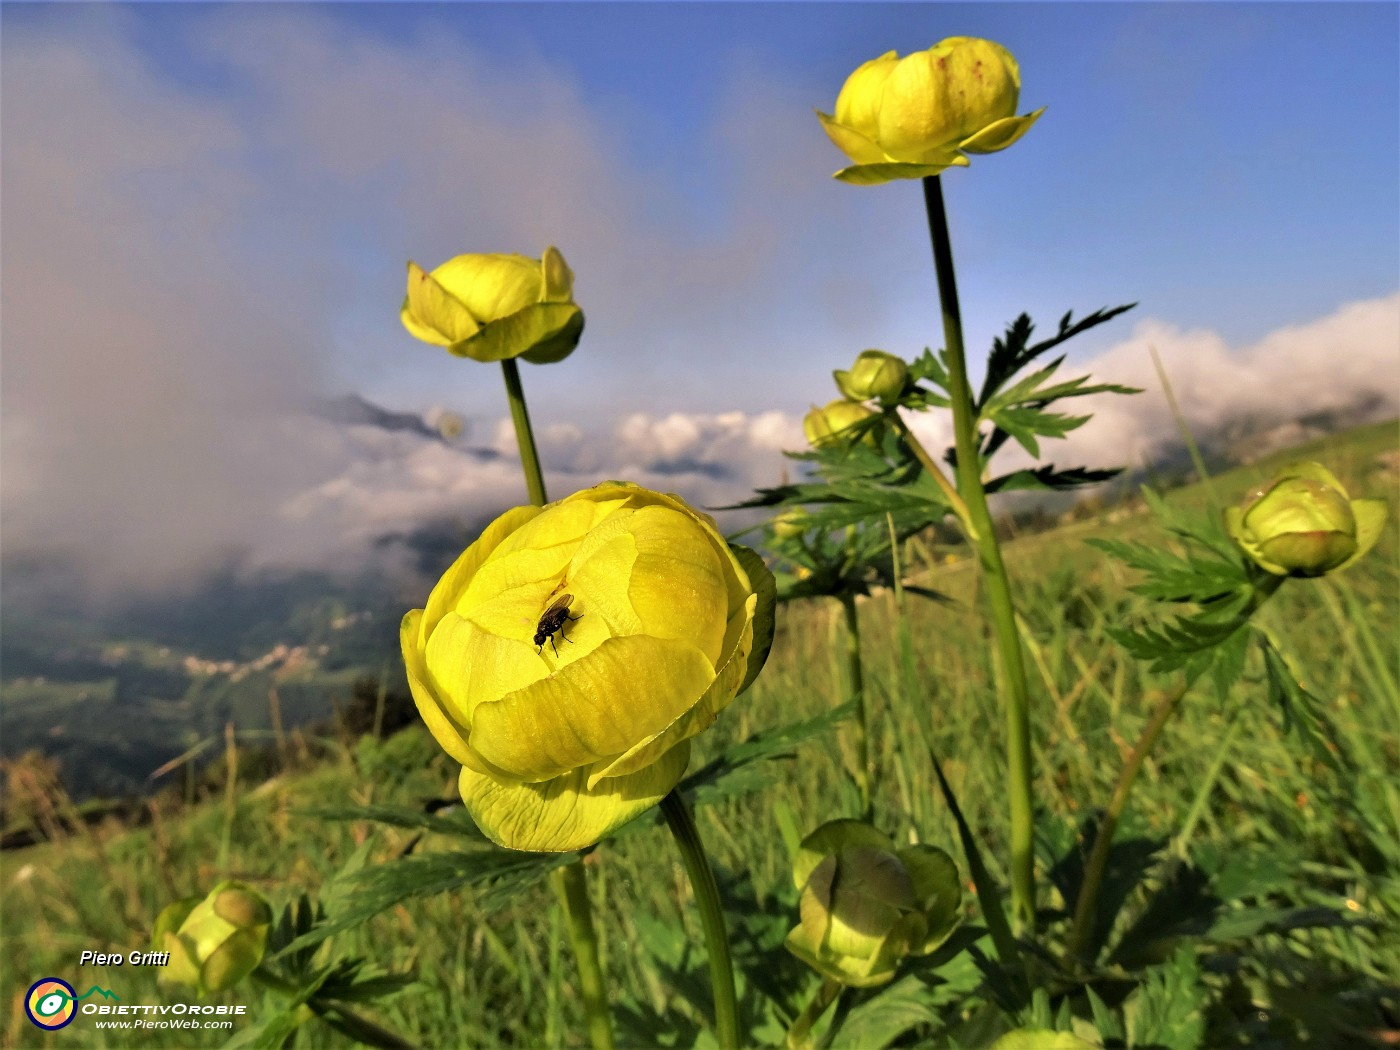 16 Primi Trollius europaeus (Botton d'oro) al sole ma con vista in Cima Alben coperta da nuvole.JPG